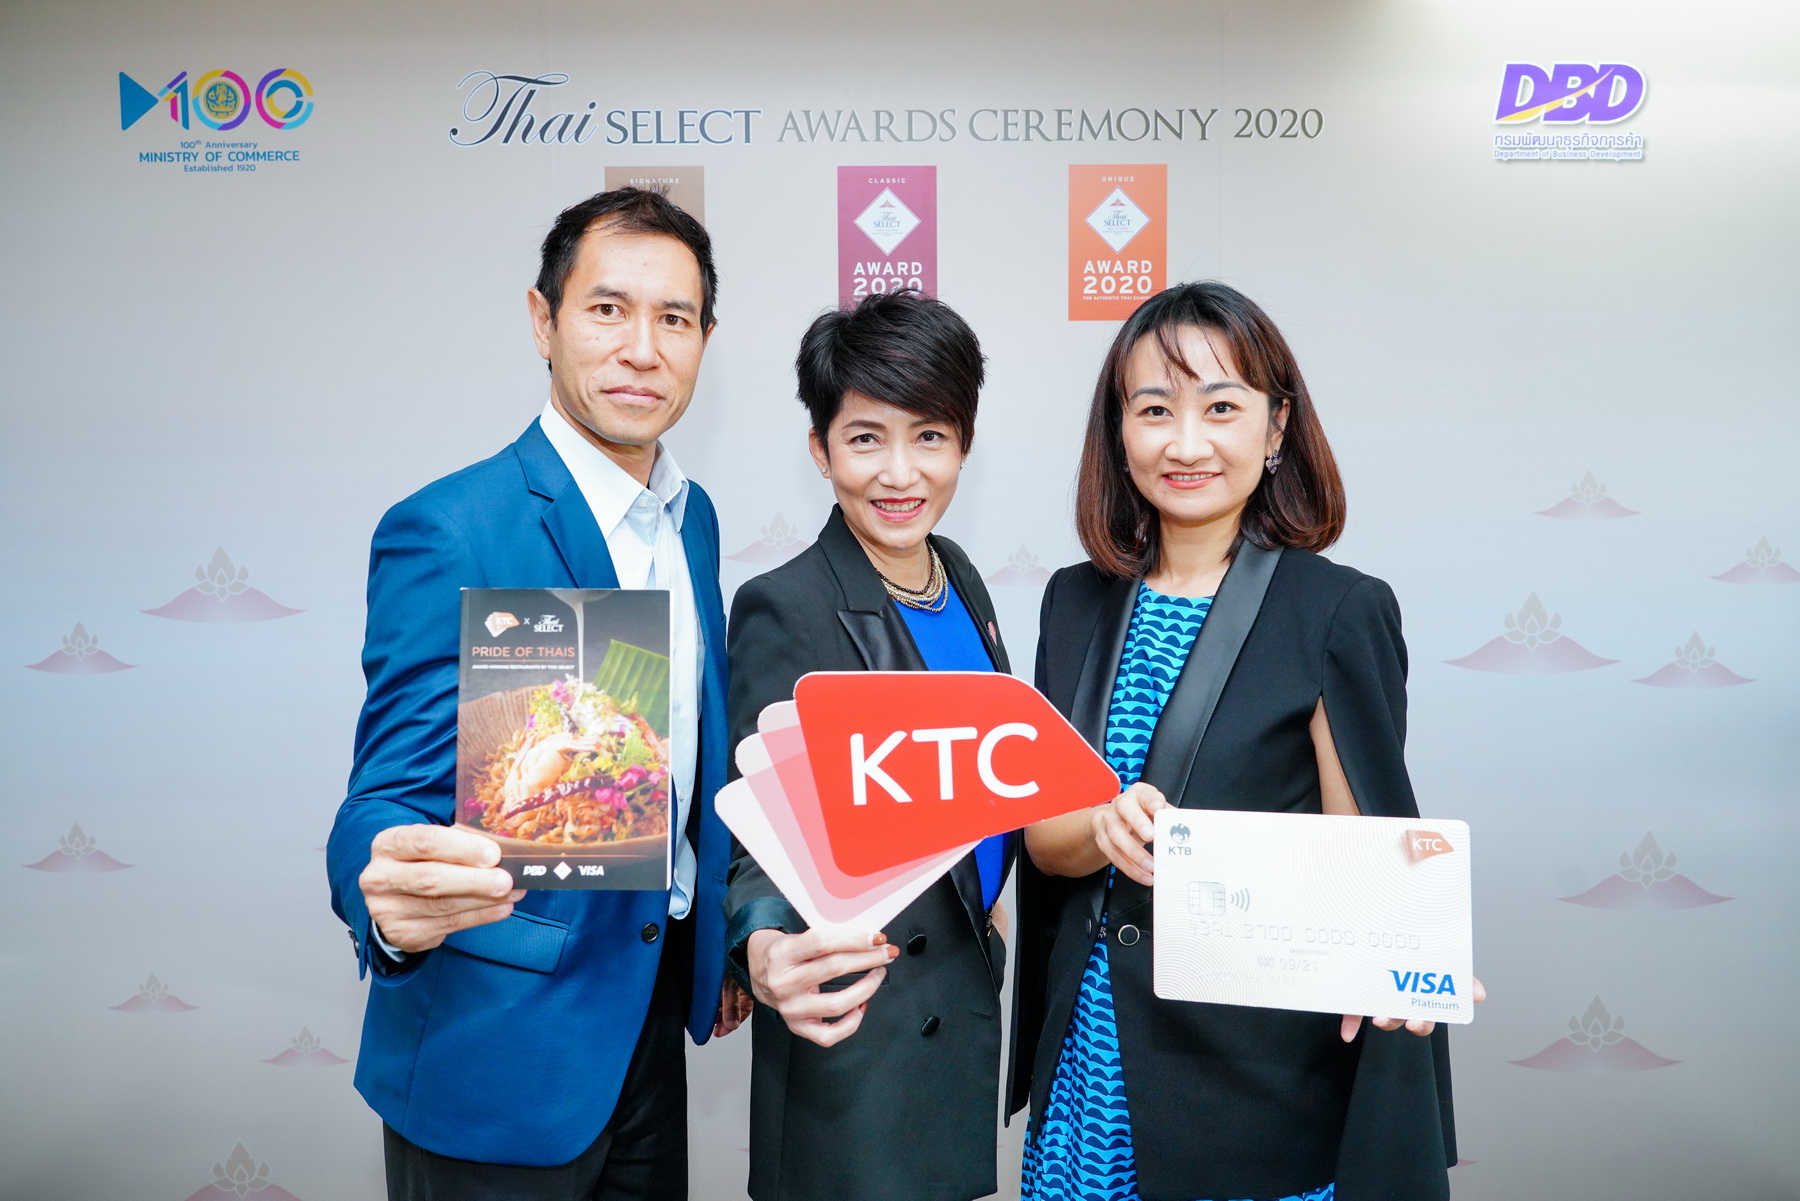 เคทีซีร่วมกับวีซ่ามอบสิทธิพิเศษให้สมาชิกลิ้มรสร้านอาหาร ที่ได้รับตราสัญลักษณ์ Thai SELECT